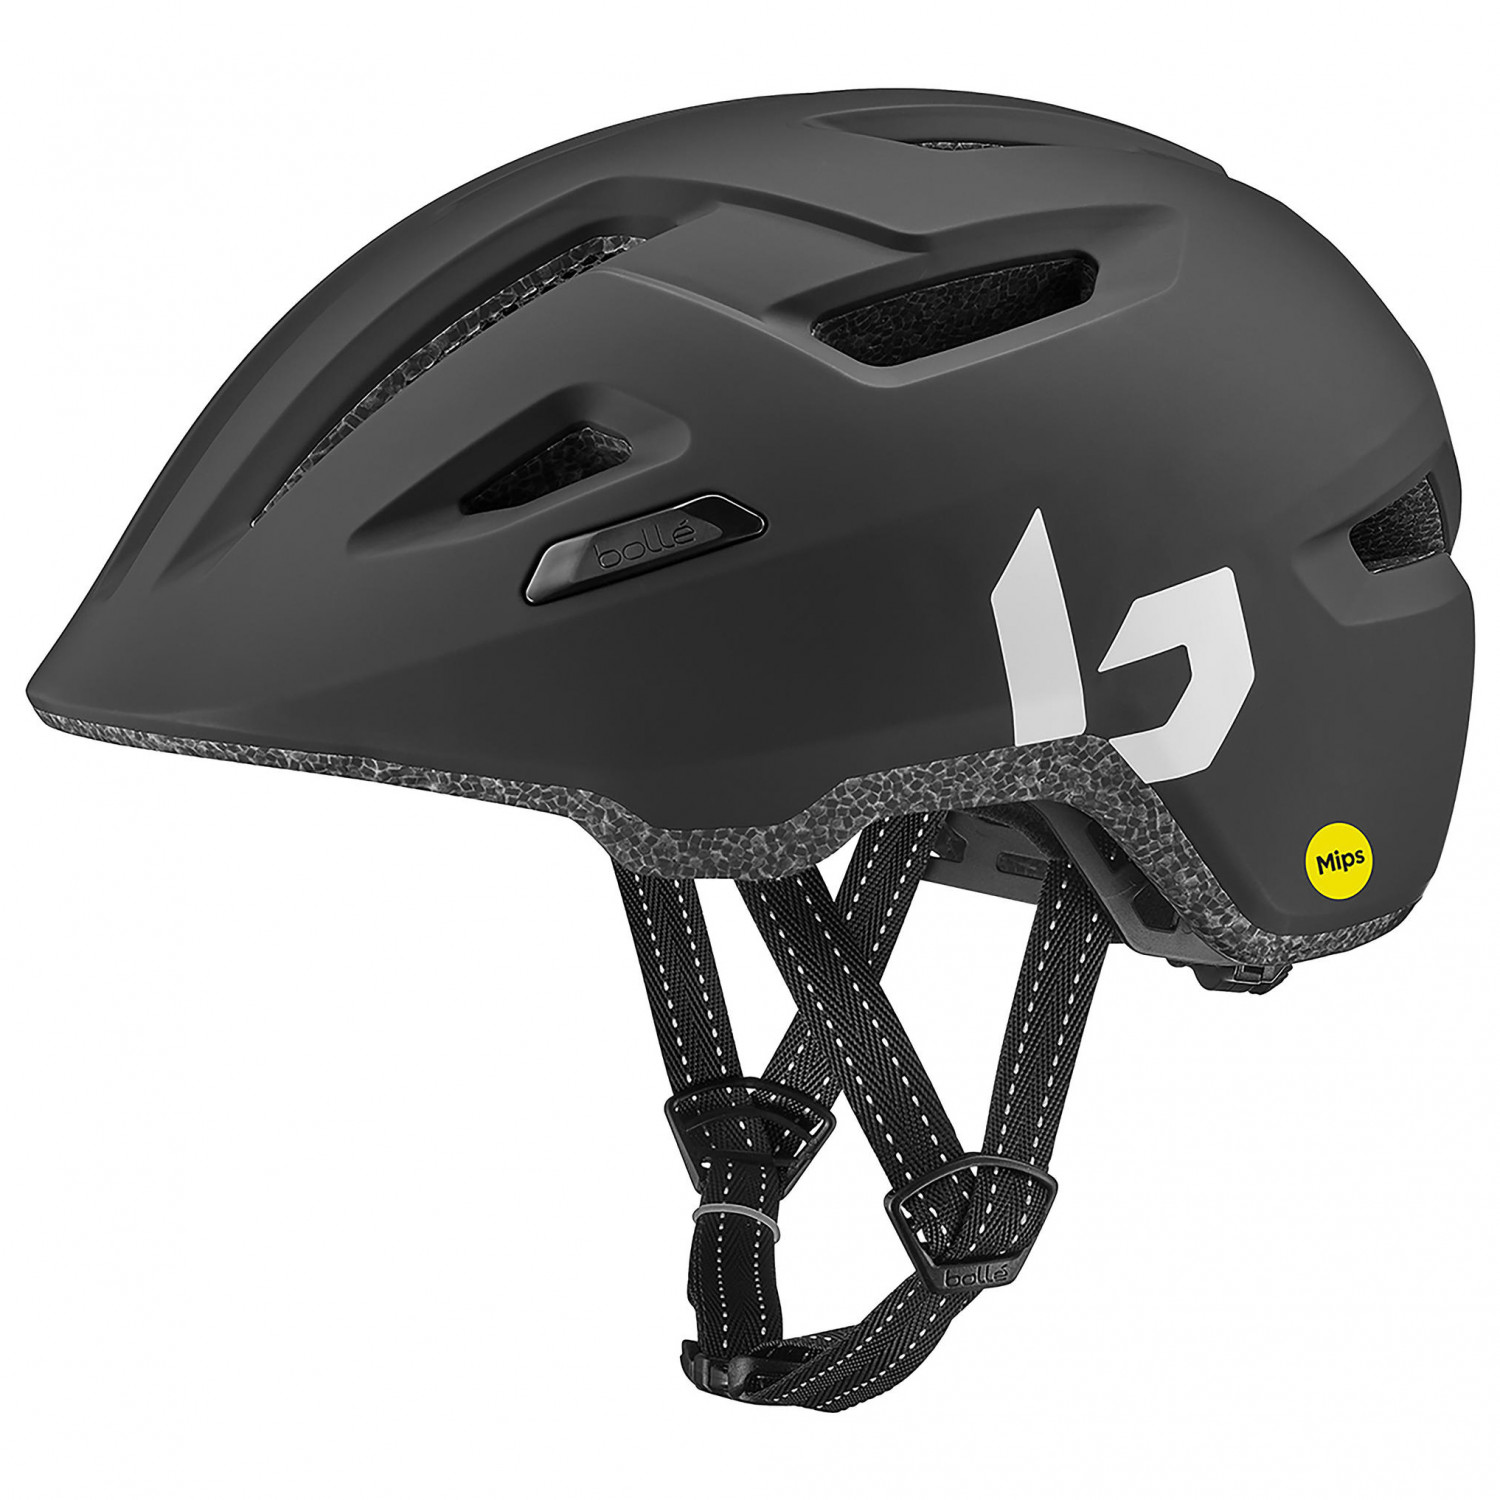 Велосипедный шлем Bollé Stance Pure MIPS, матовый черный шлем ангельские крылья для езды на велосипеде 1 пара